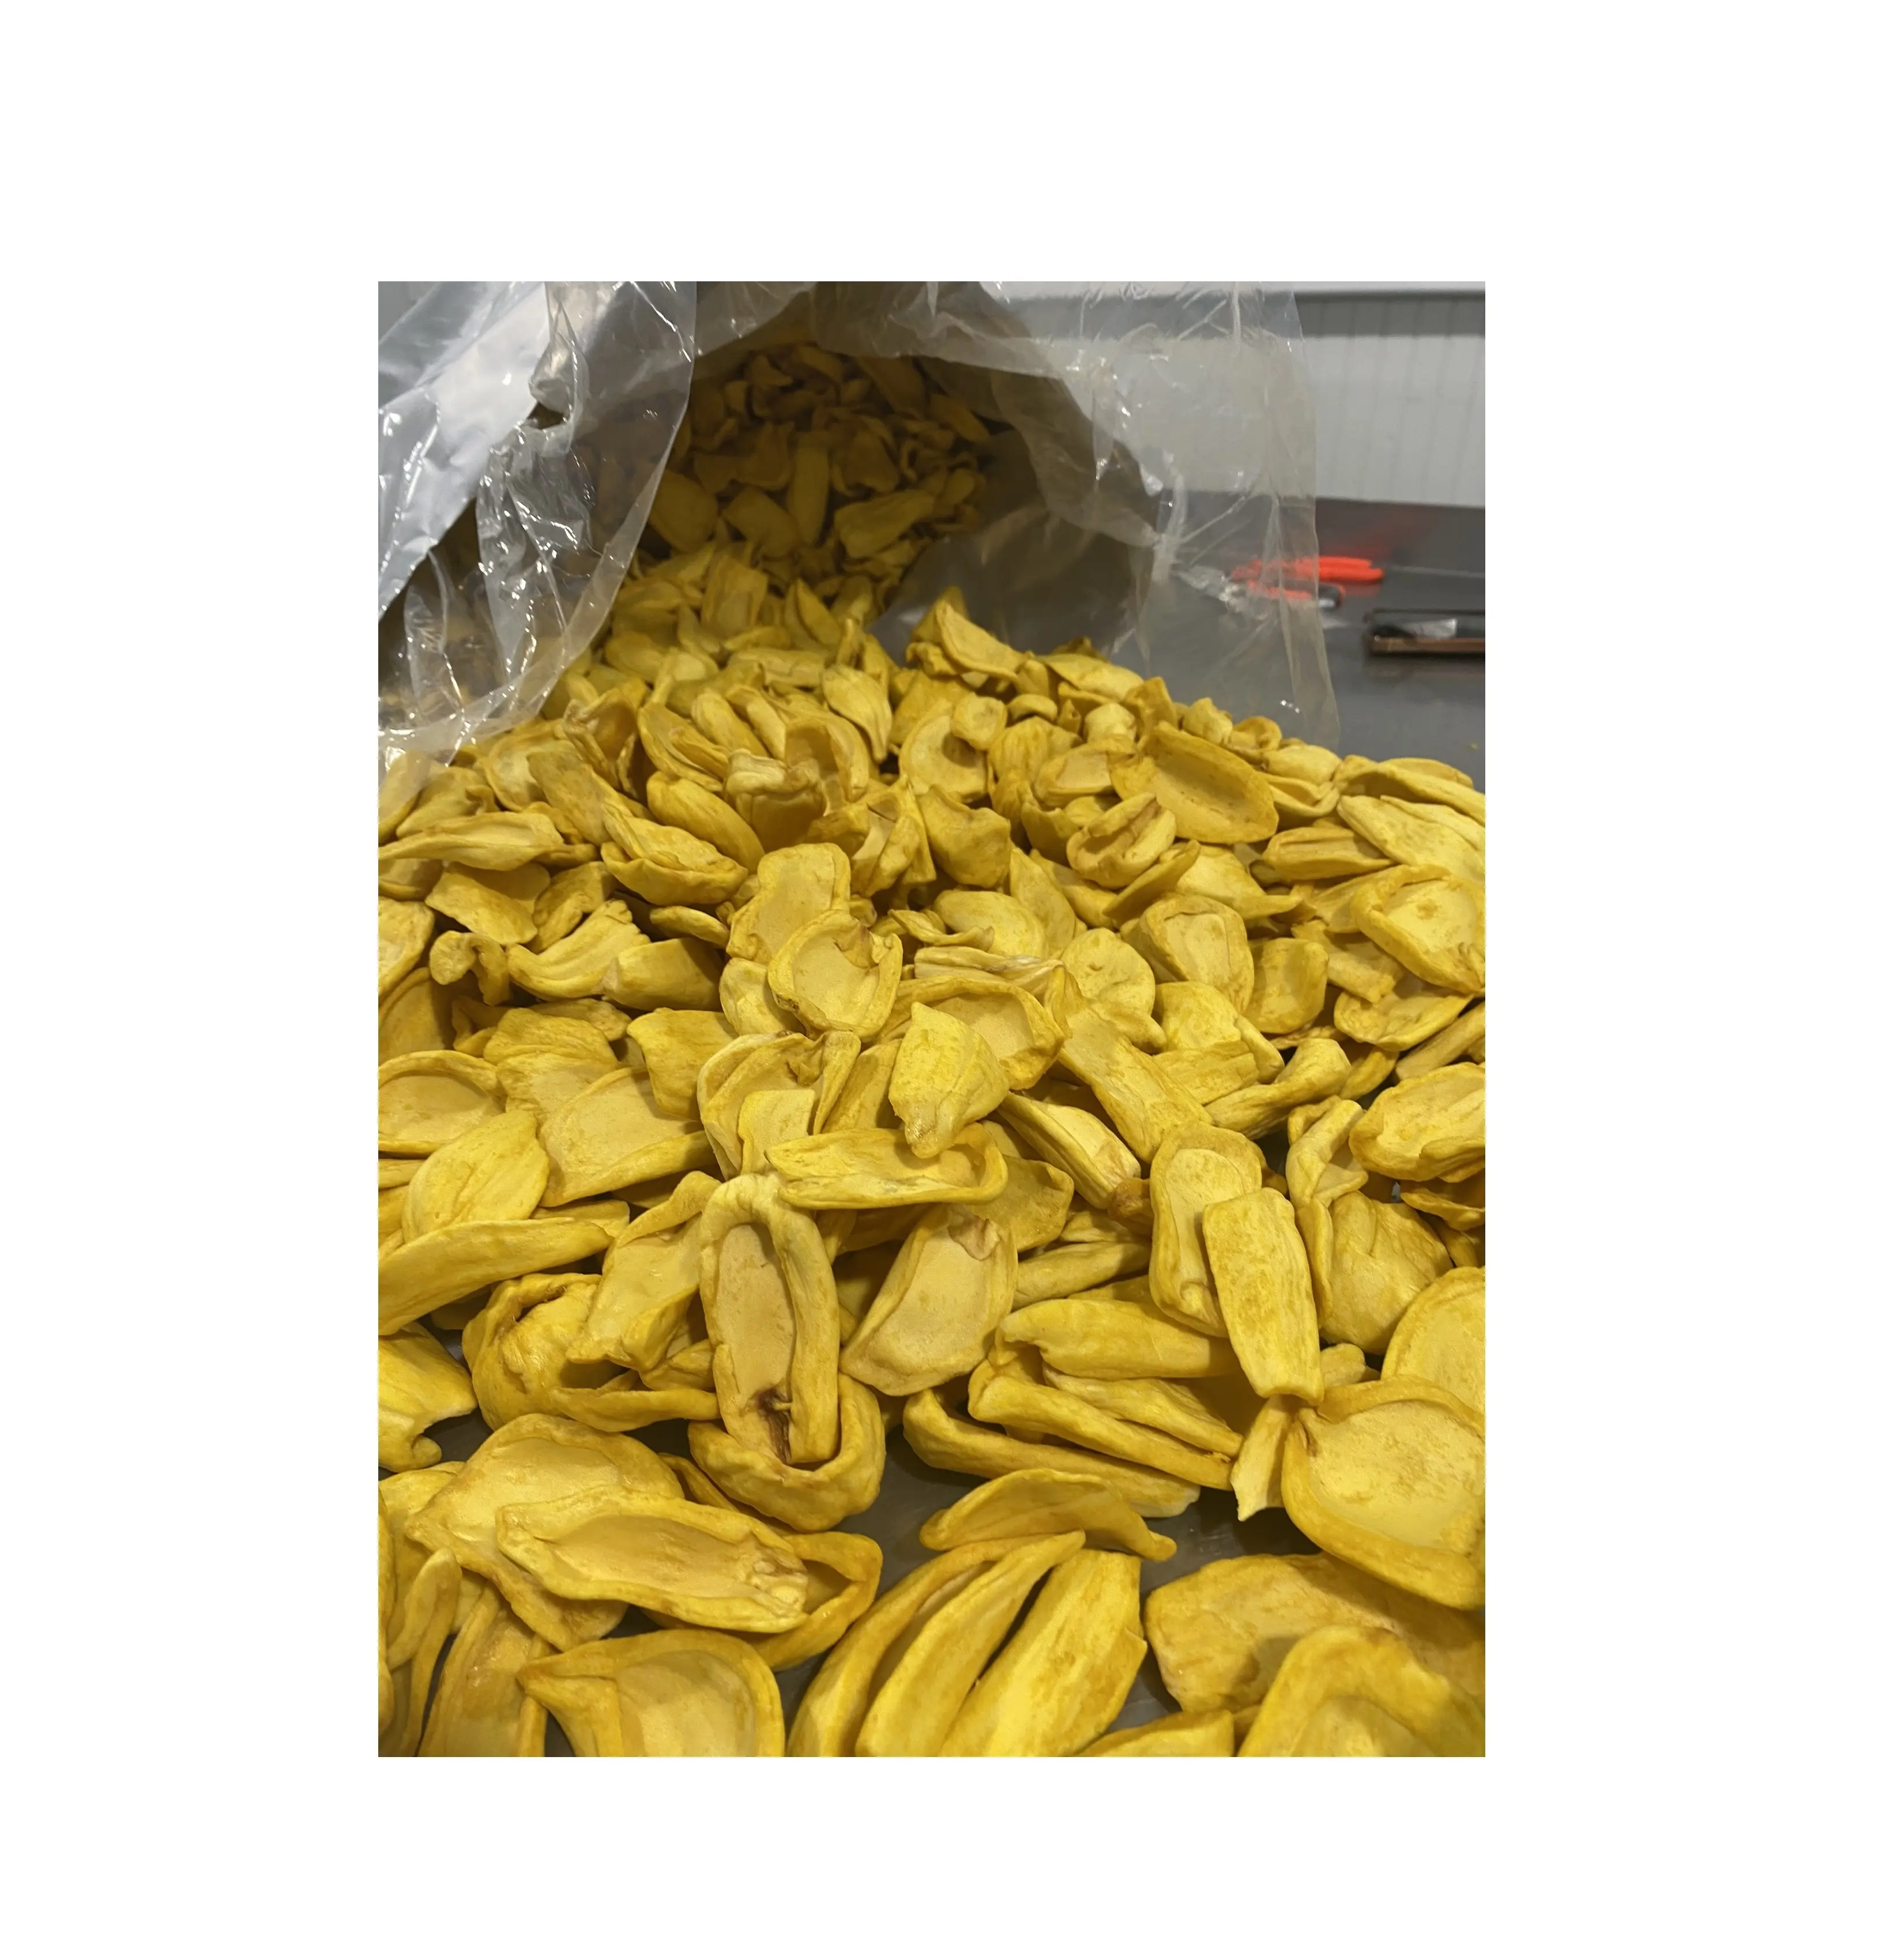 Fabricación de frutas y verduras secas/Envasado a granel venta de frutas secas/Contacto de Jaca seca natural MsSandy 0084587176063